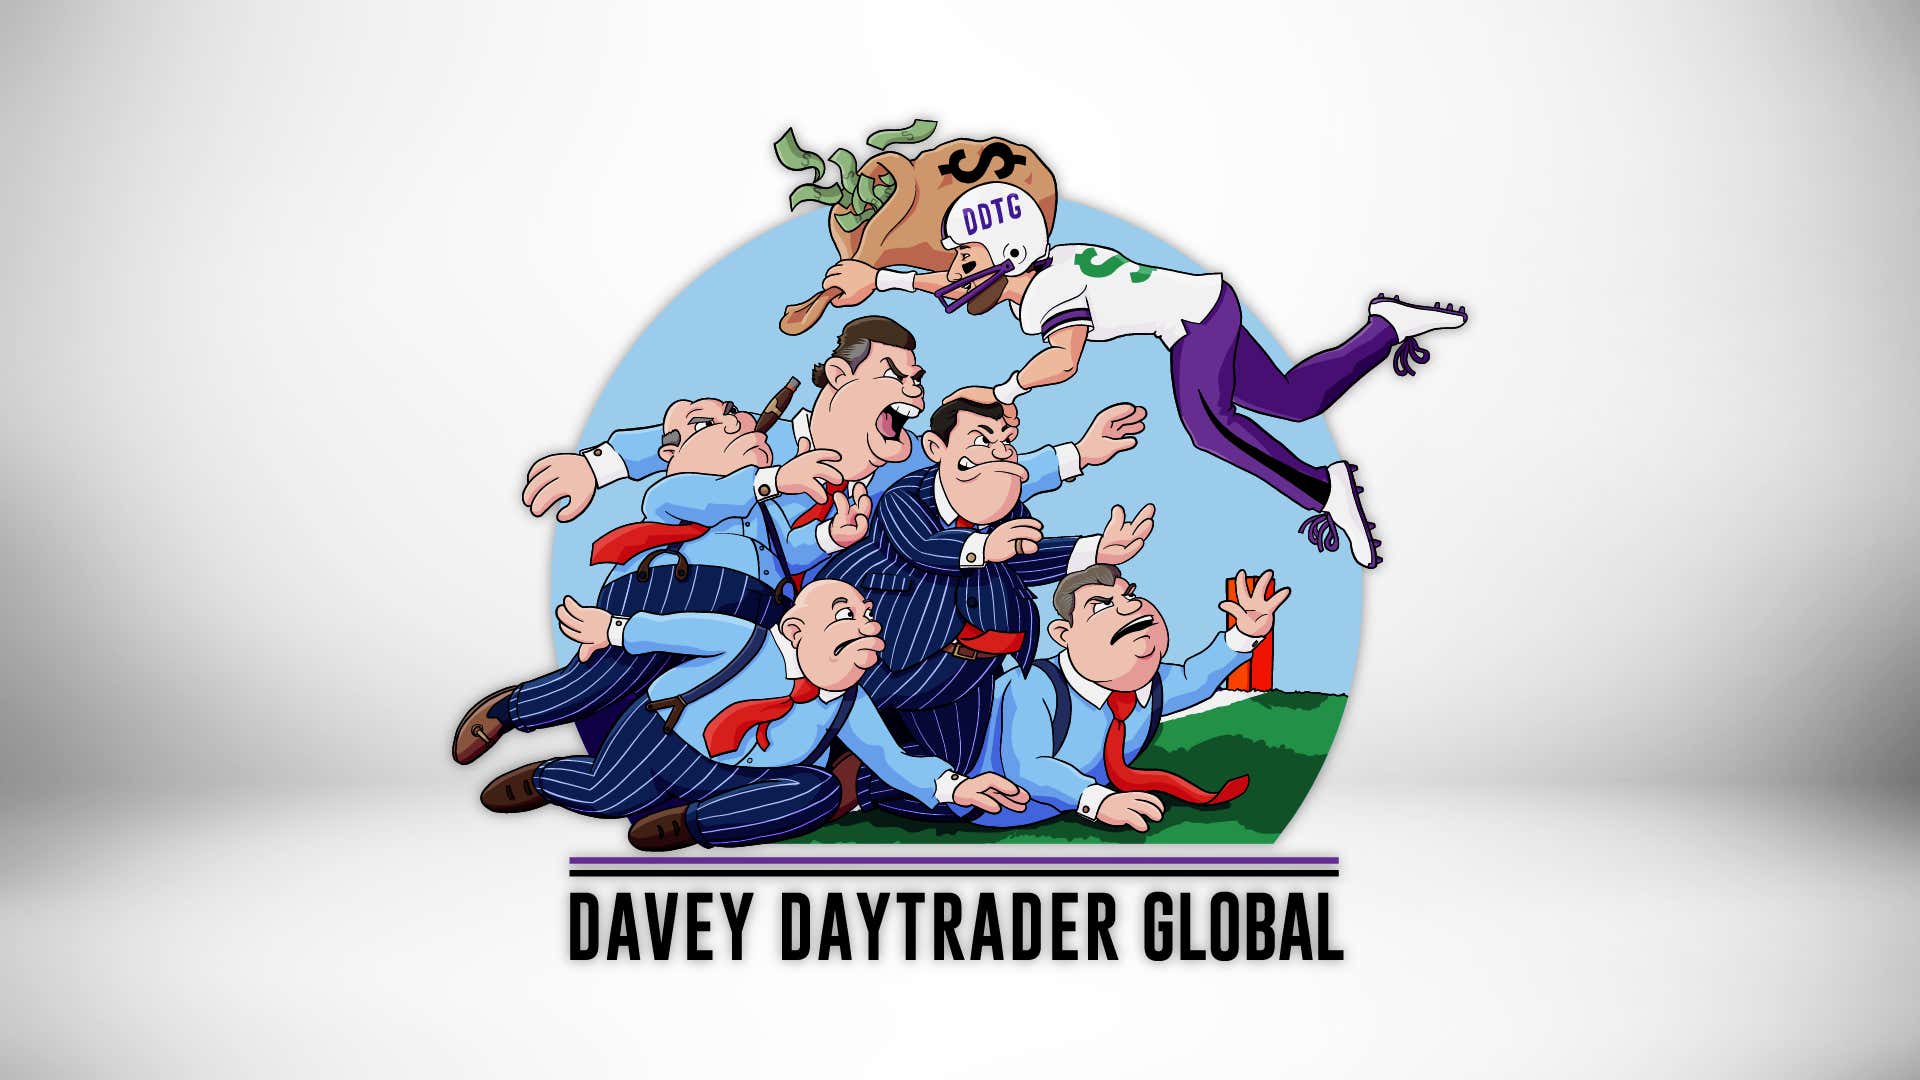 Davey Day Trader – September 9, 2020